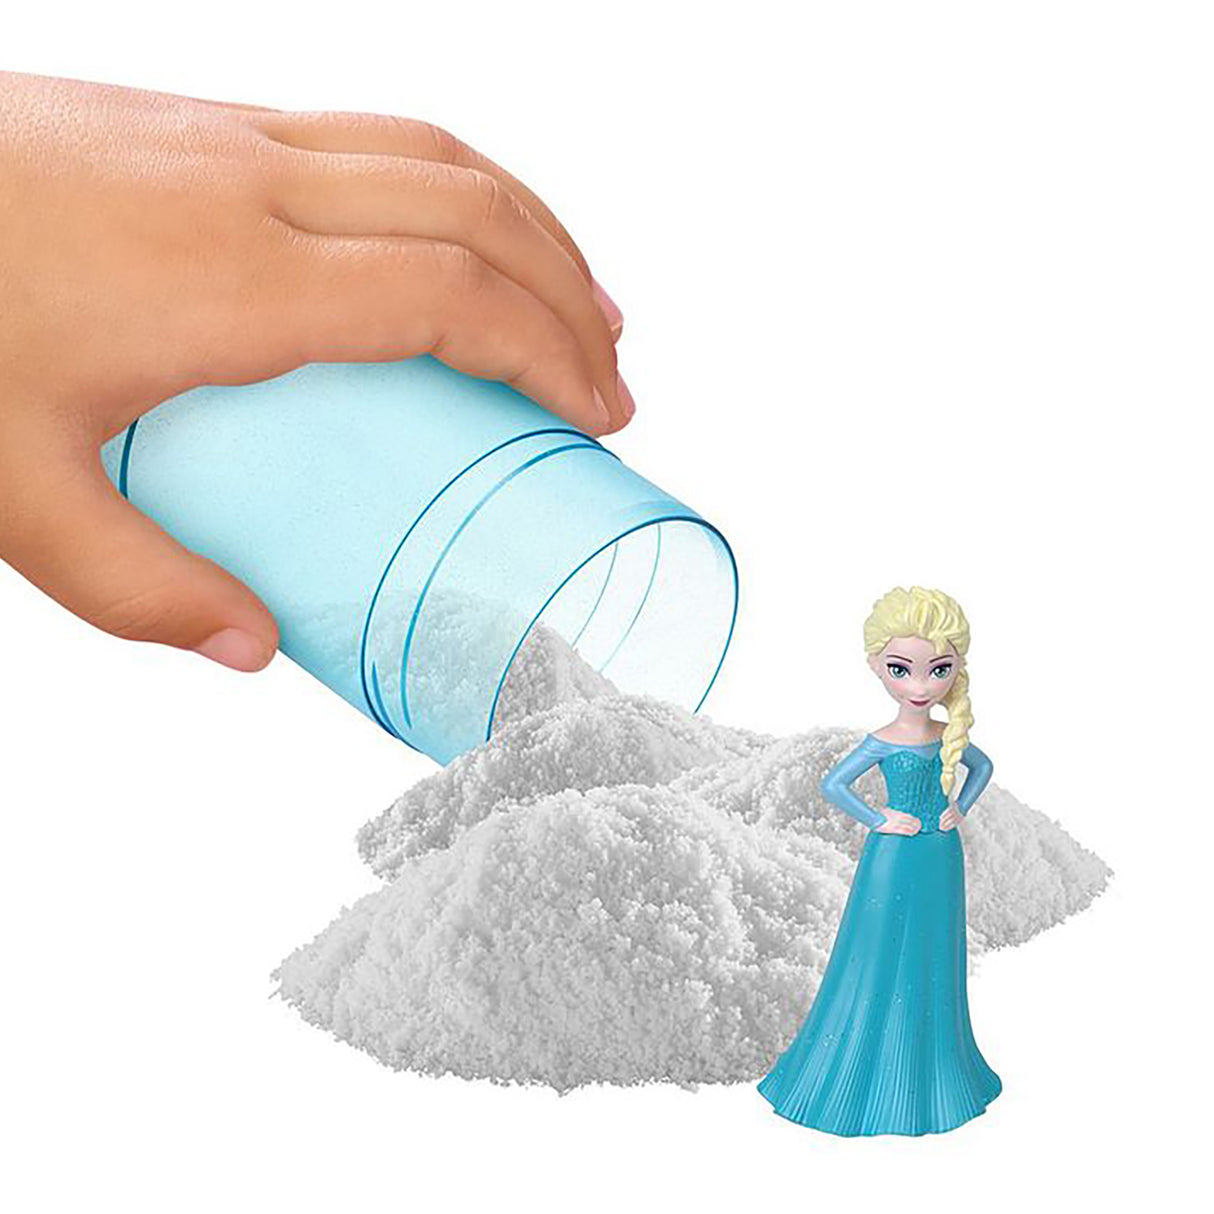 Disney Frozen Snow Colour Reveal Dolls Assorted